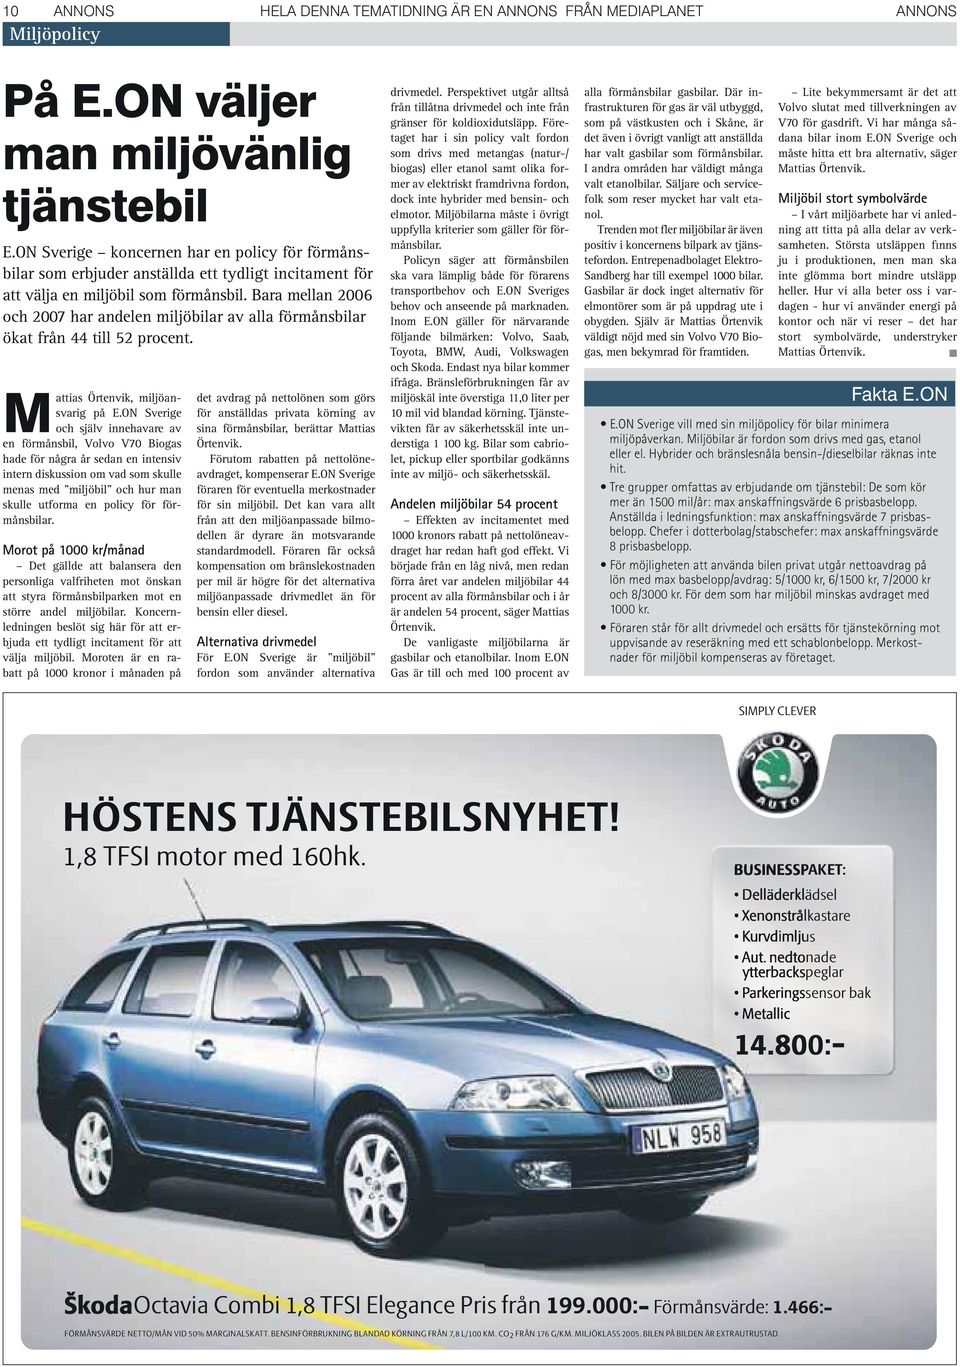 Bara mellan 2006 och 2007 har andelen miljöbilar av alla förmånsbilar ökat från 44 till 52 procent. Mattias Örtenvik, miljöansvarig på E.